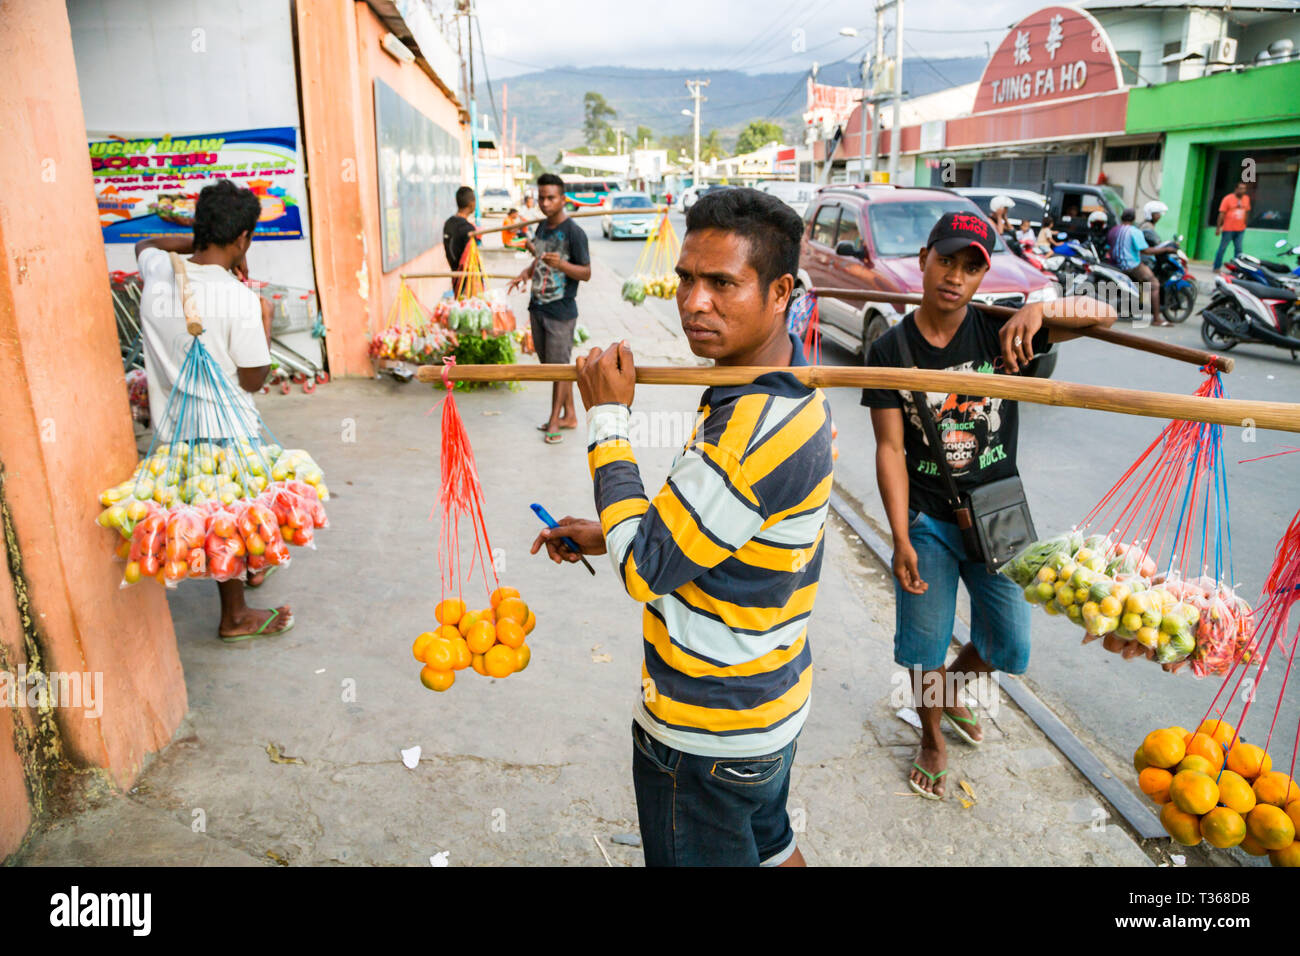 Gli uomini di Timor, street vending frutta e verdura appeso su funi dal collo gioghi fatta di bastoni in una trafficata strada del mercato del capitale Dili, Timor Est. Foto Stock